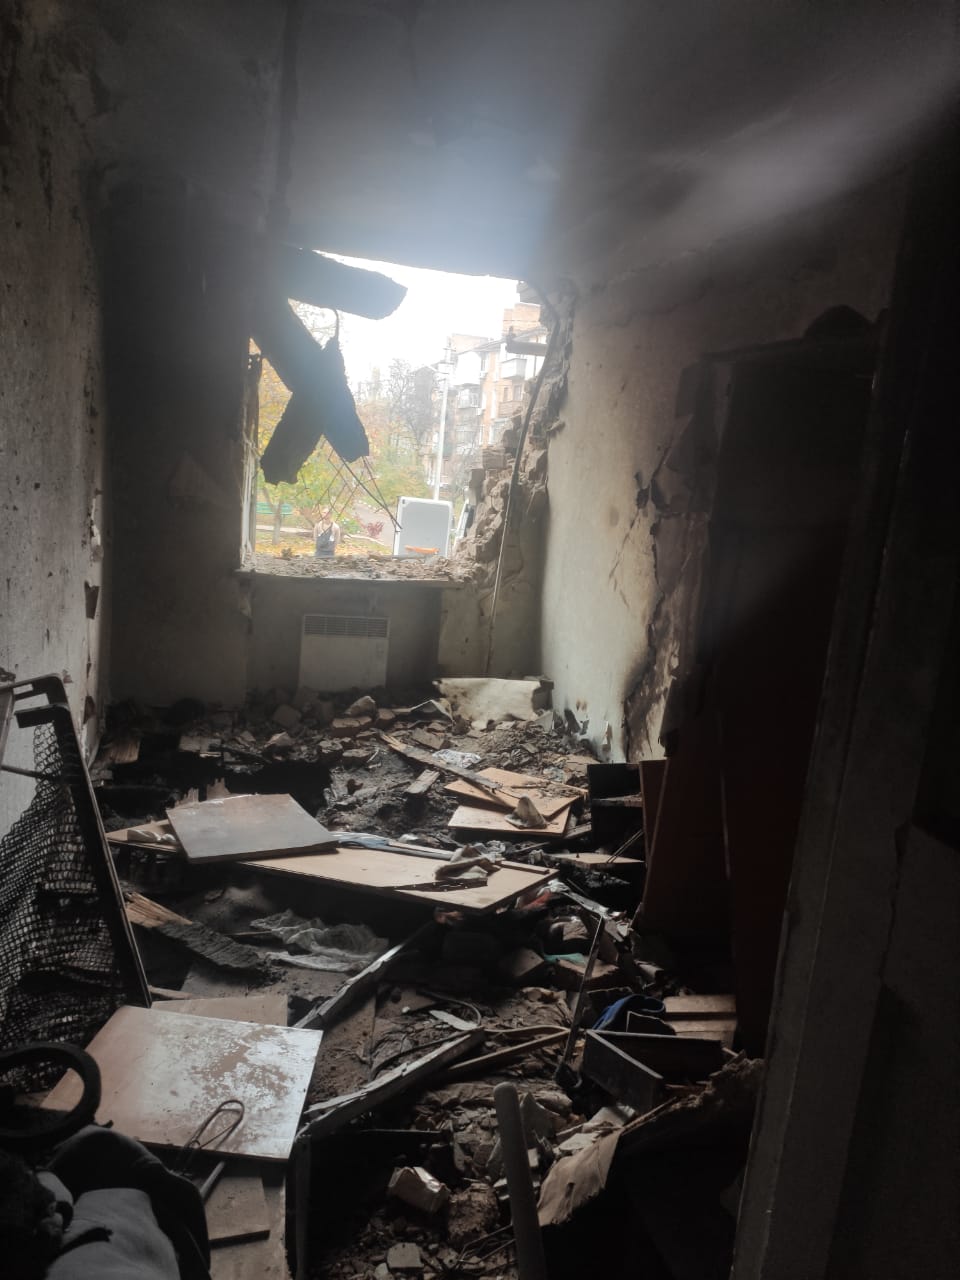 In Nikopol, people were injured in their own homes